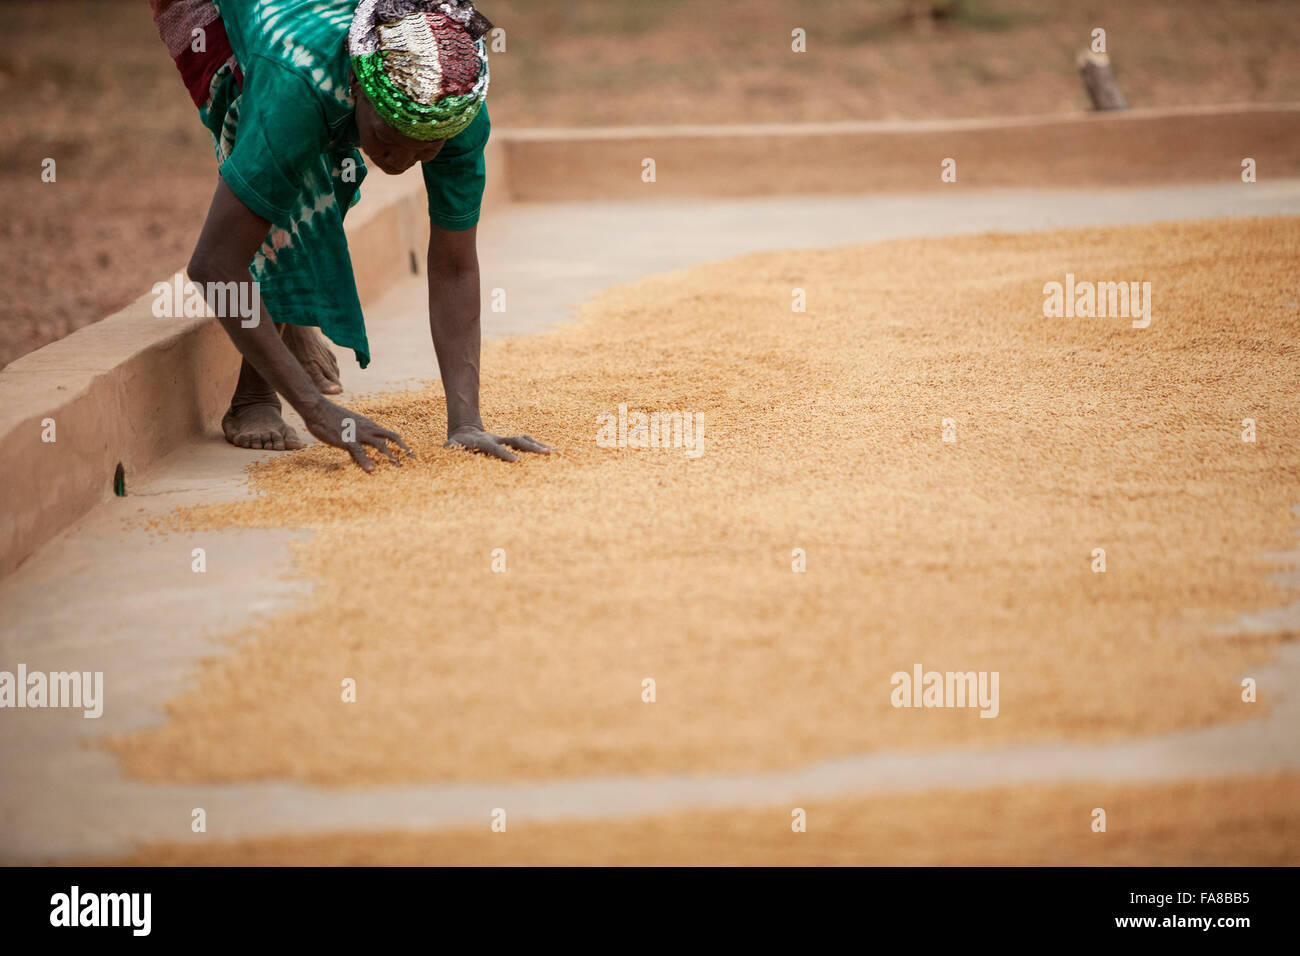 Le riz est séché avant d'être vendu à un groupe de femmes centre de traitement des demandes de la province du Sourou, au Burkina Faso. Banque D'Images